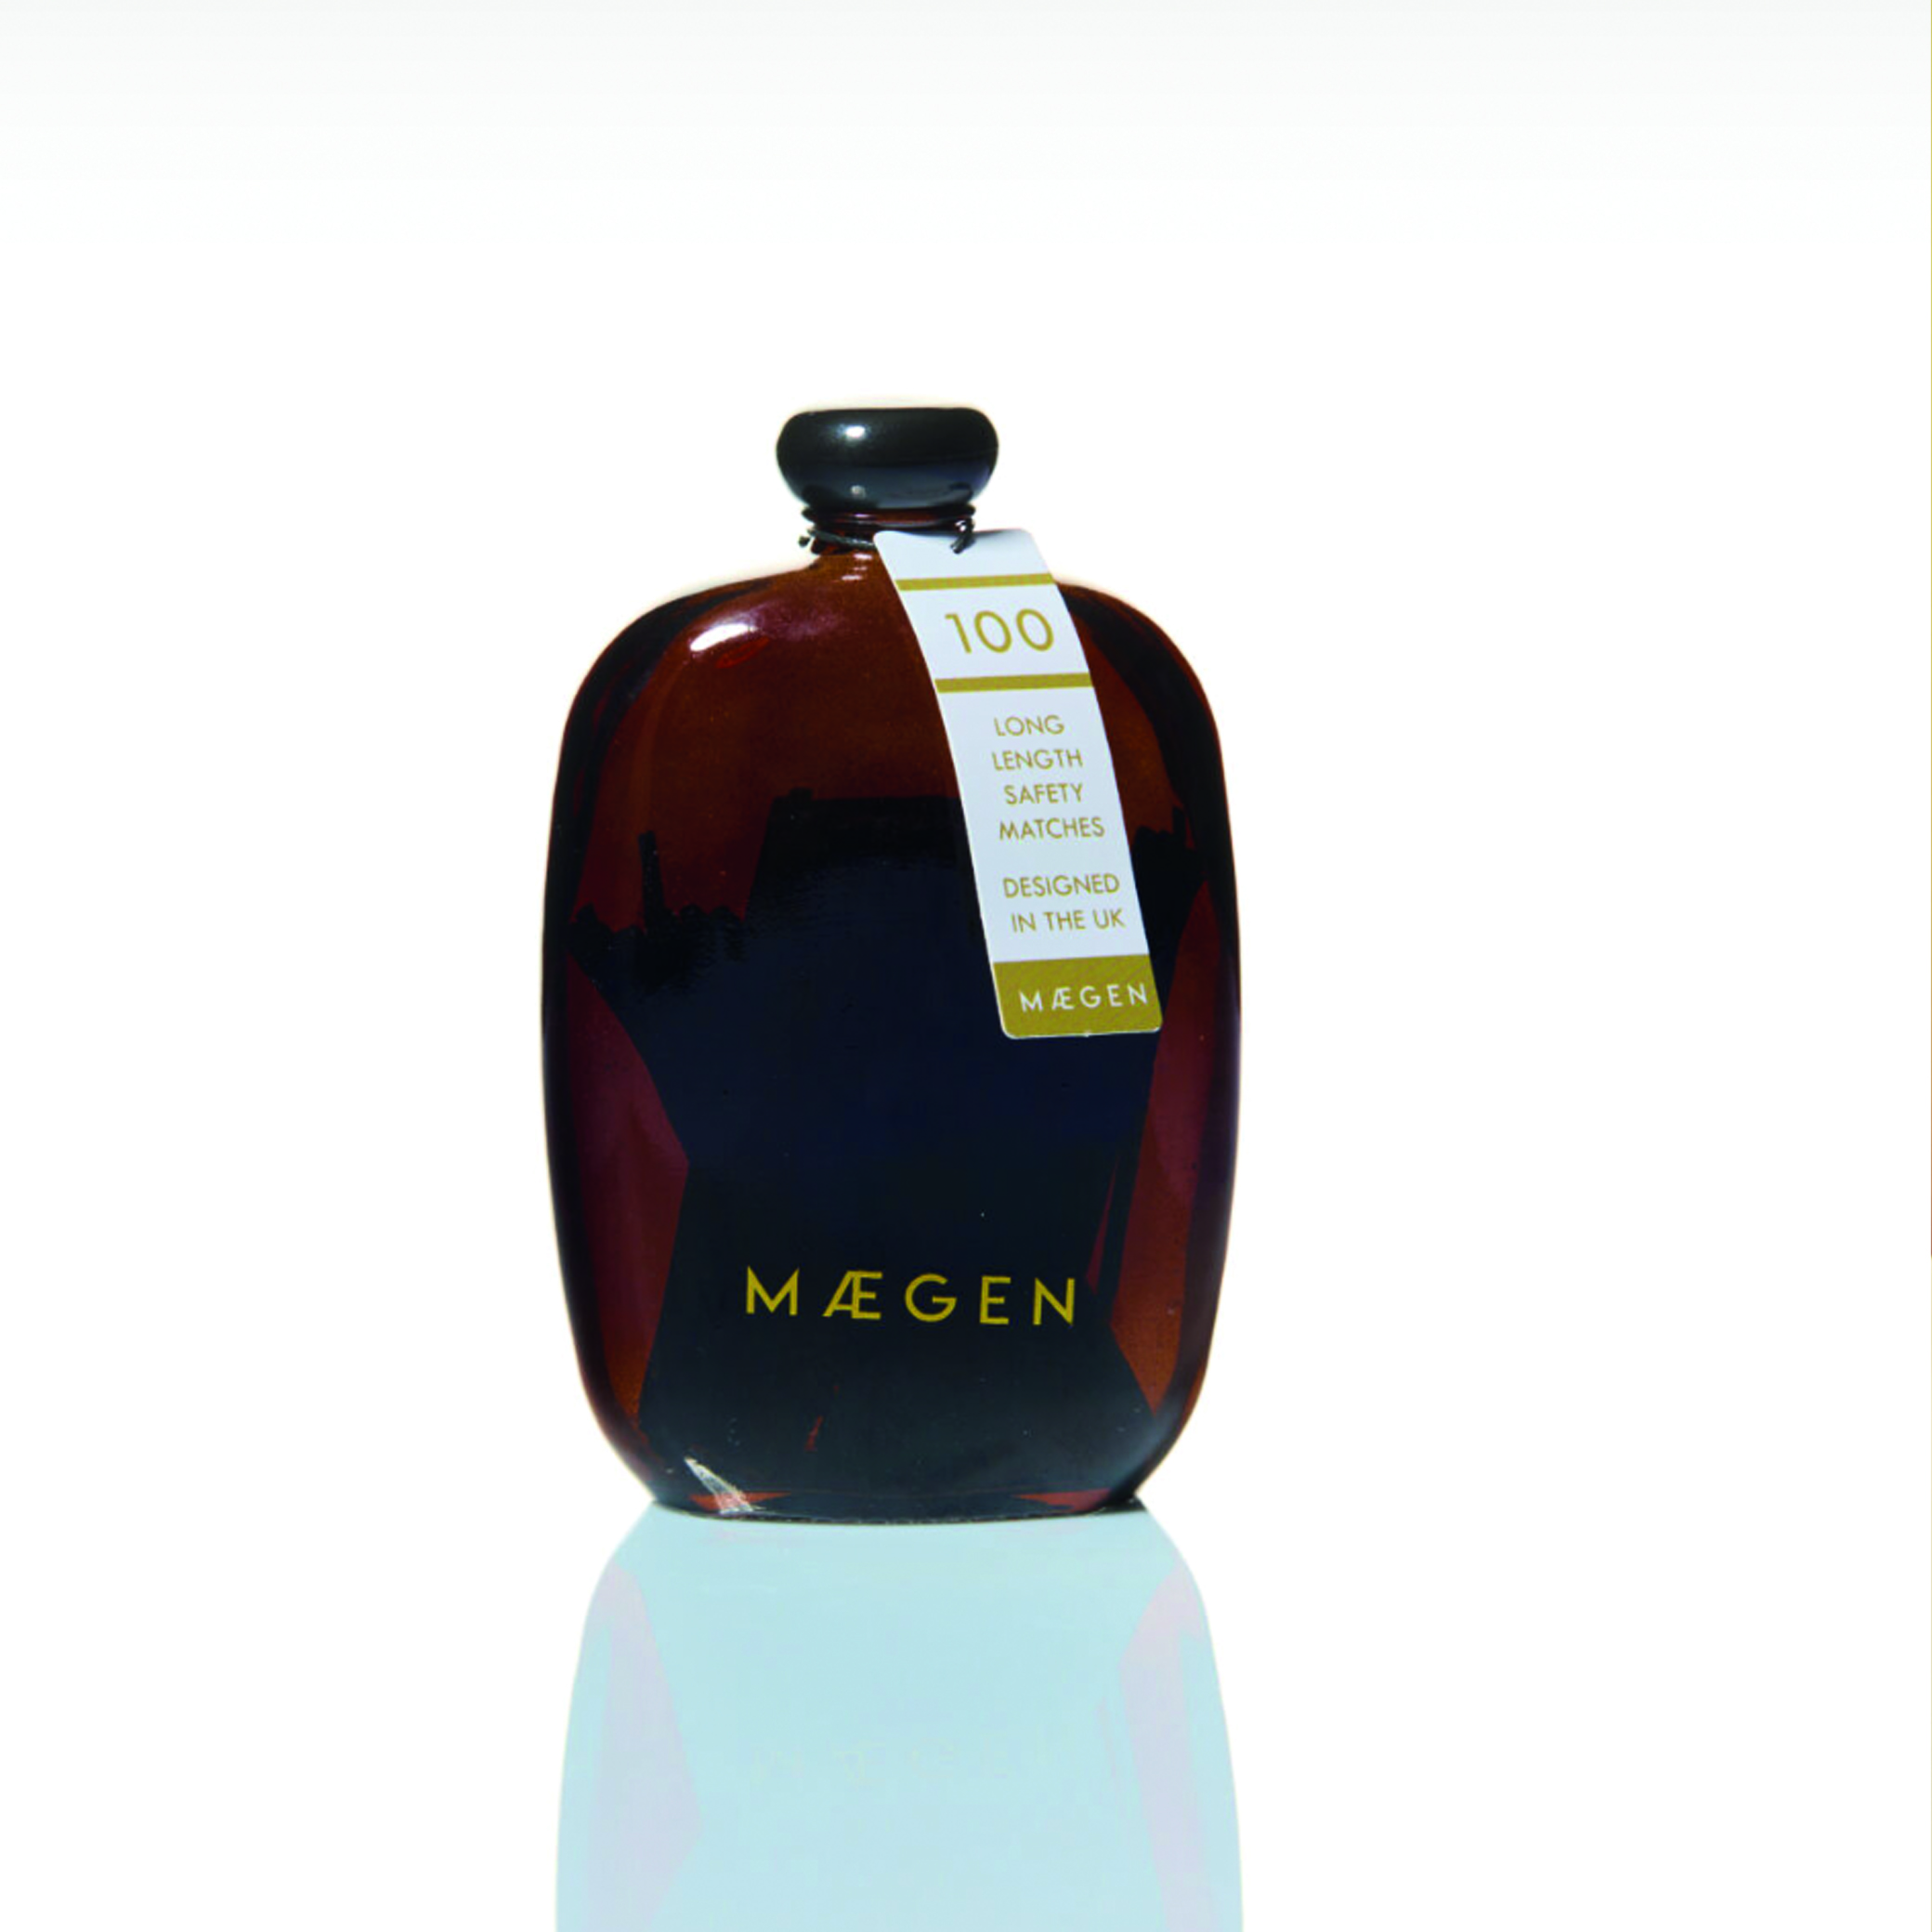 maegen-bubble-jar-with-matches-black